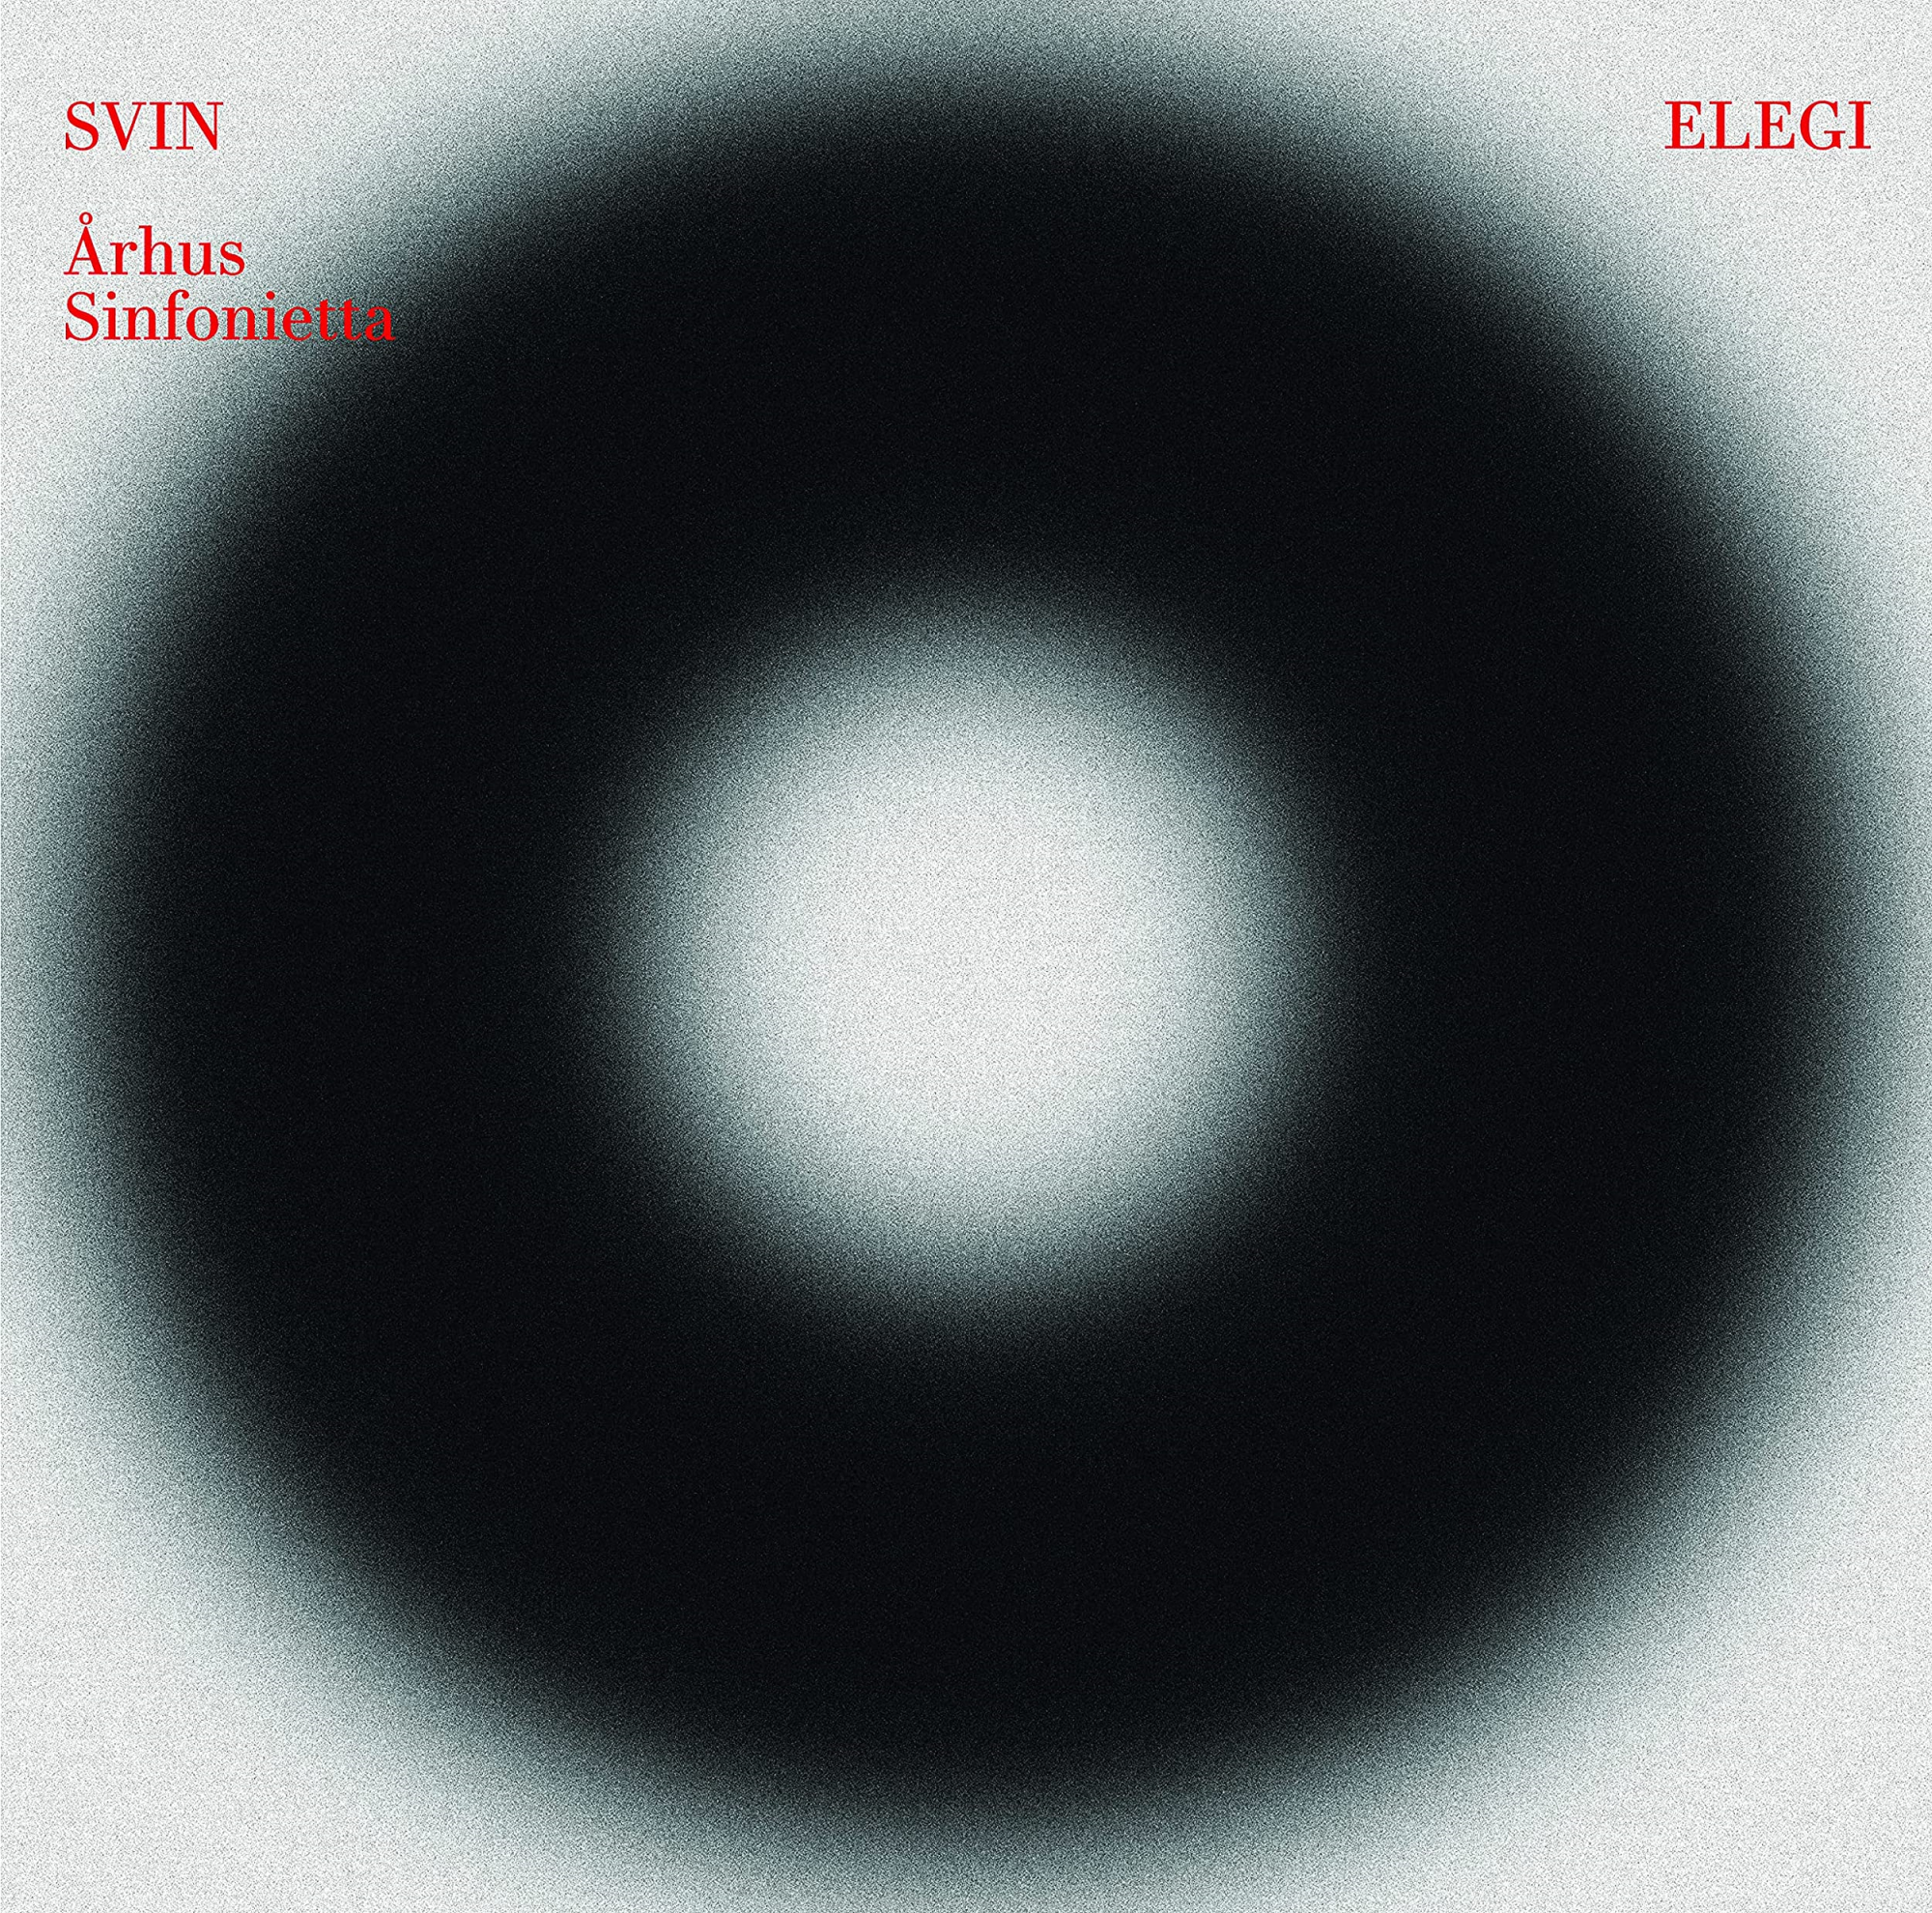 Vinile Svin / Arhus Sinfonietta: Elegi (2 Lp) NUOVO SIGILLATO, EDIZIONE DEL 12/01/2022 SUBITO DISPONIBILE